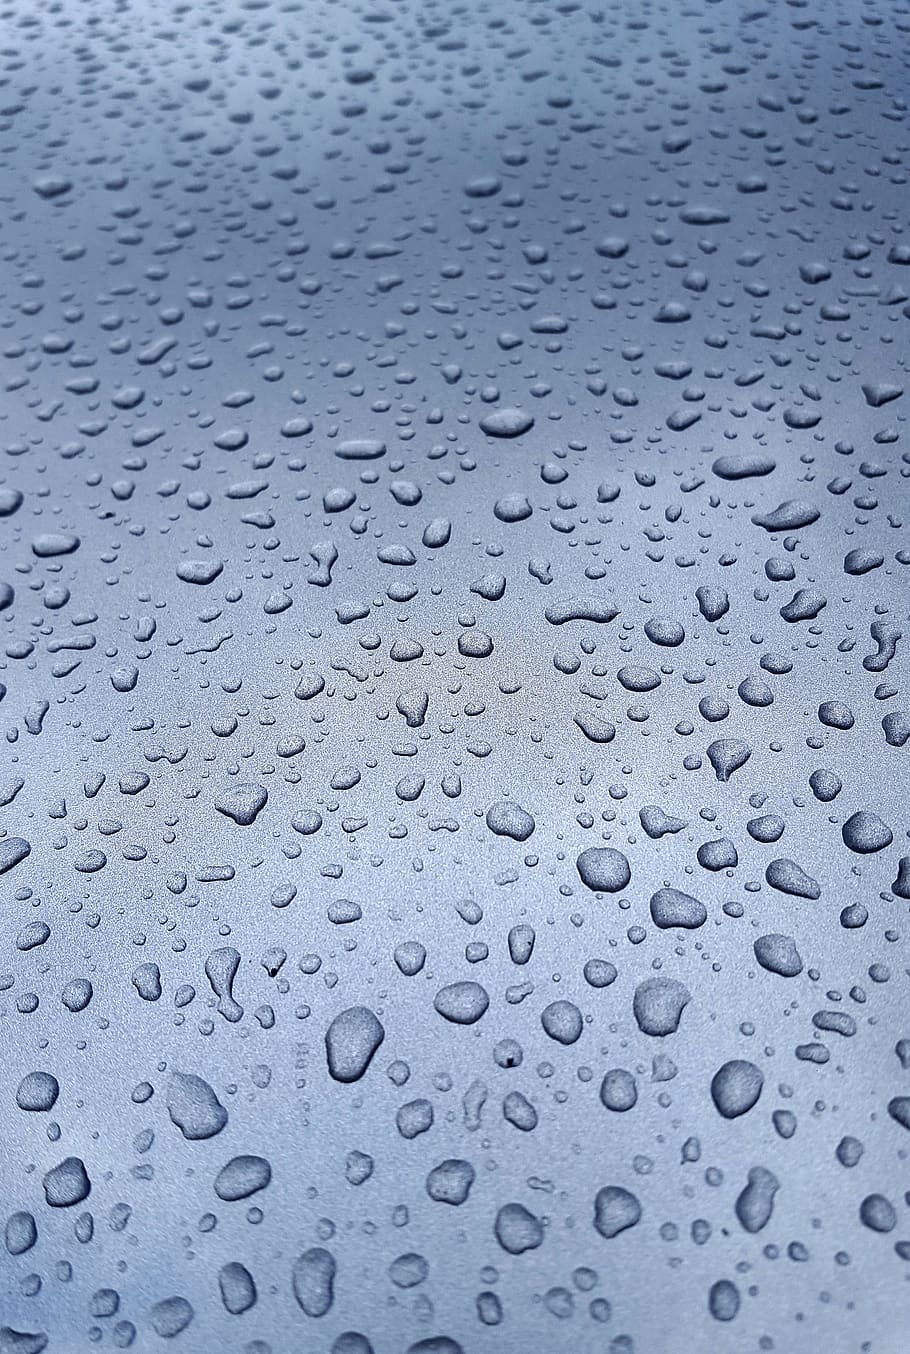 chuva, janela, gota de chuva, pintura, automático, molhado, frisado, gota de água, padrão, triste